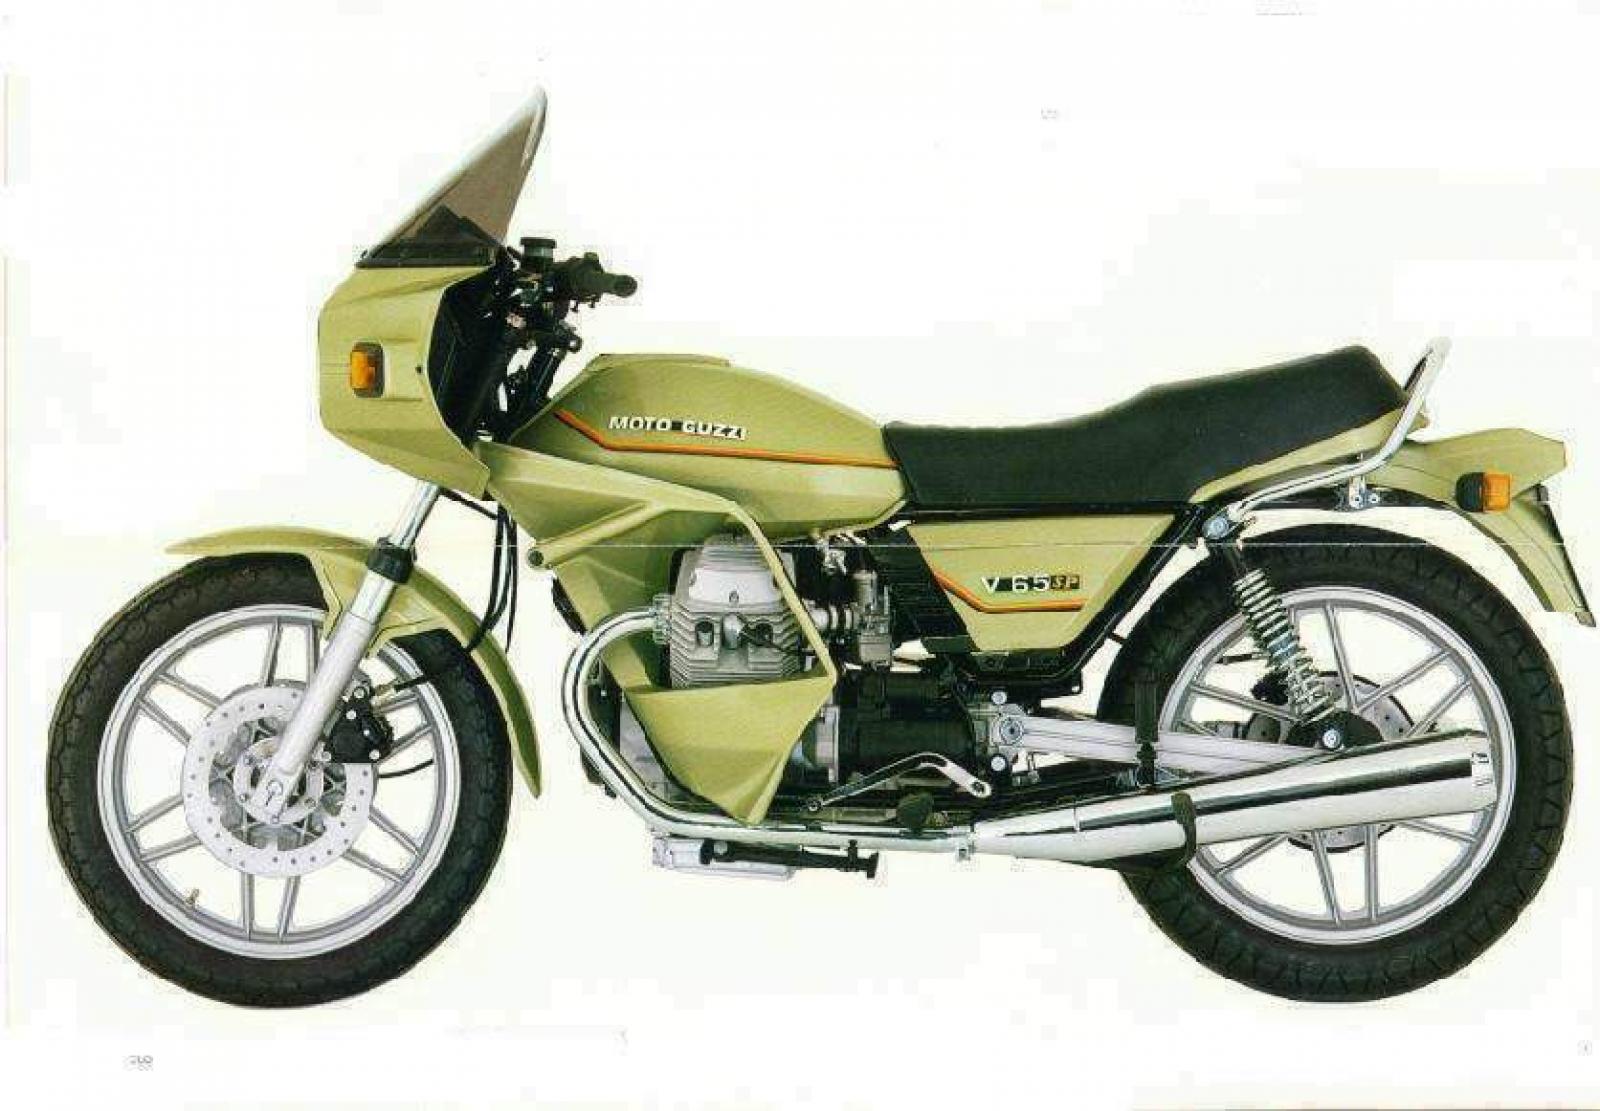 Moto Guzzi V 65 SP 1983 photo - 2